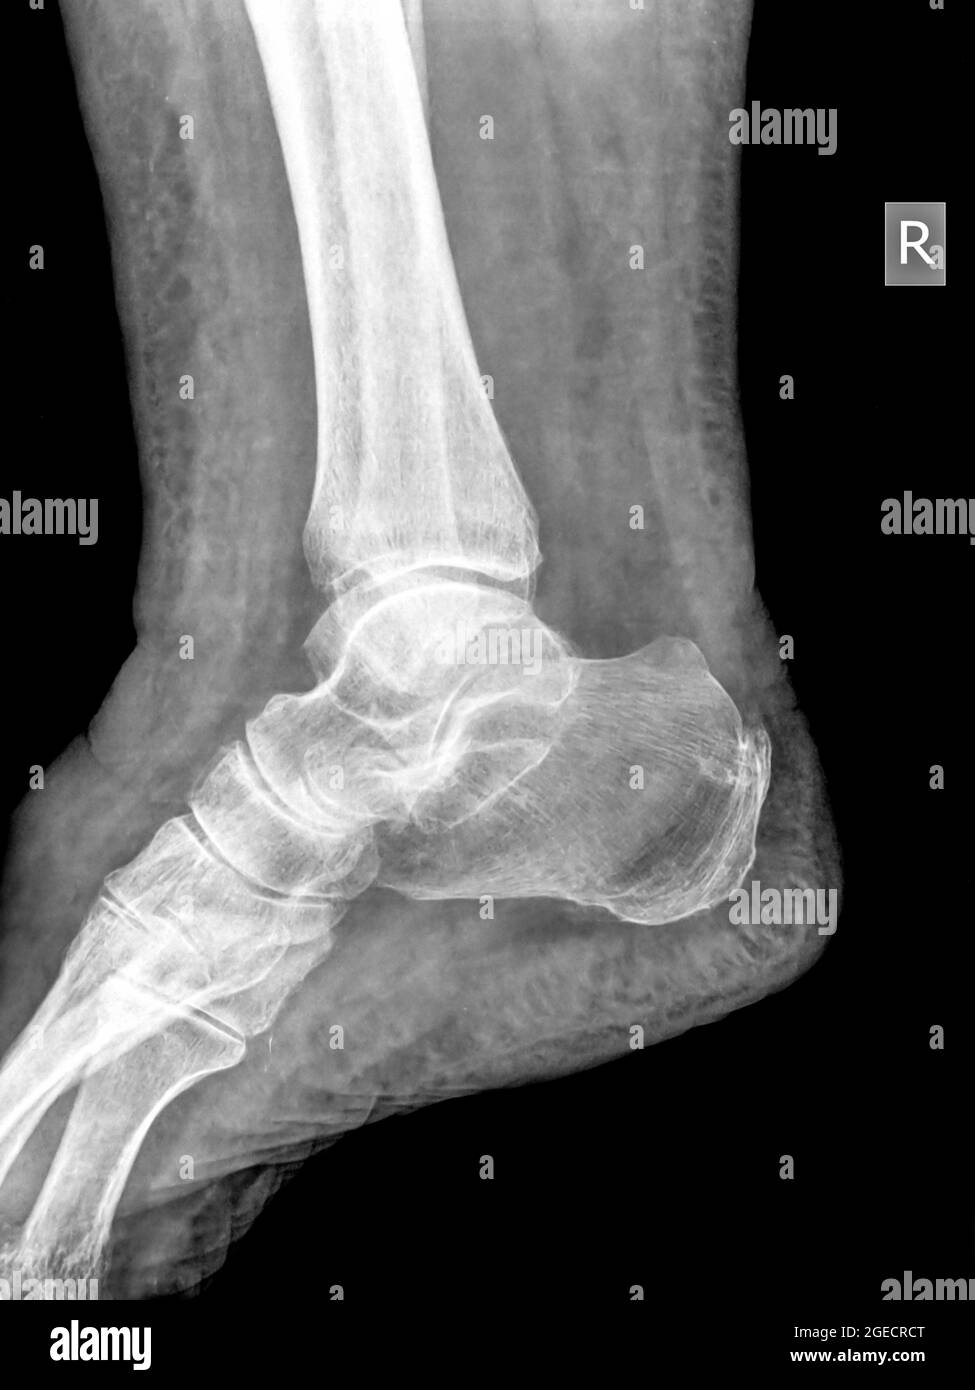 Gesunde Sprunggelenk x-ray von einem 79 Jahre alten weiblichen Patienten. Kein Bruch noch Verstauchung gesehen werden kann Stockfoto